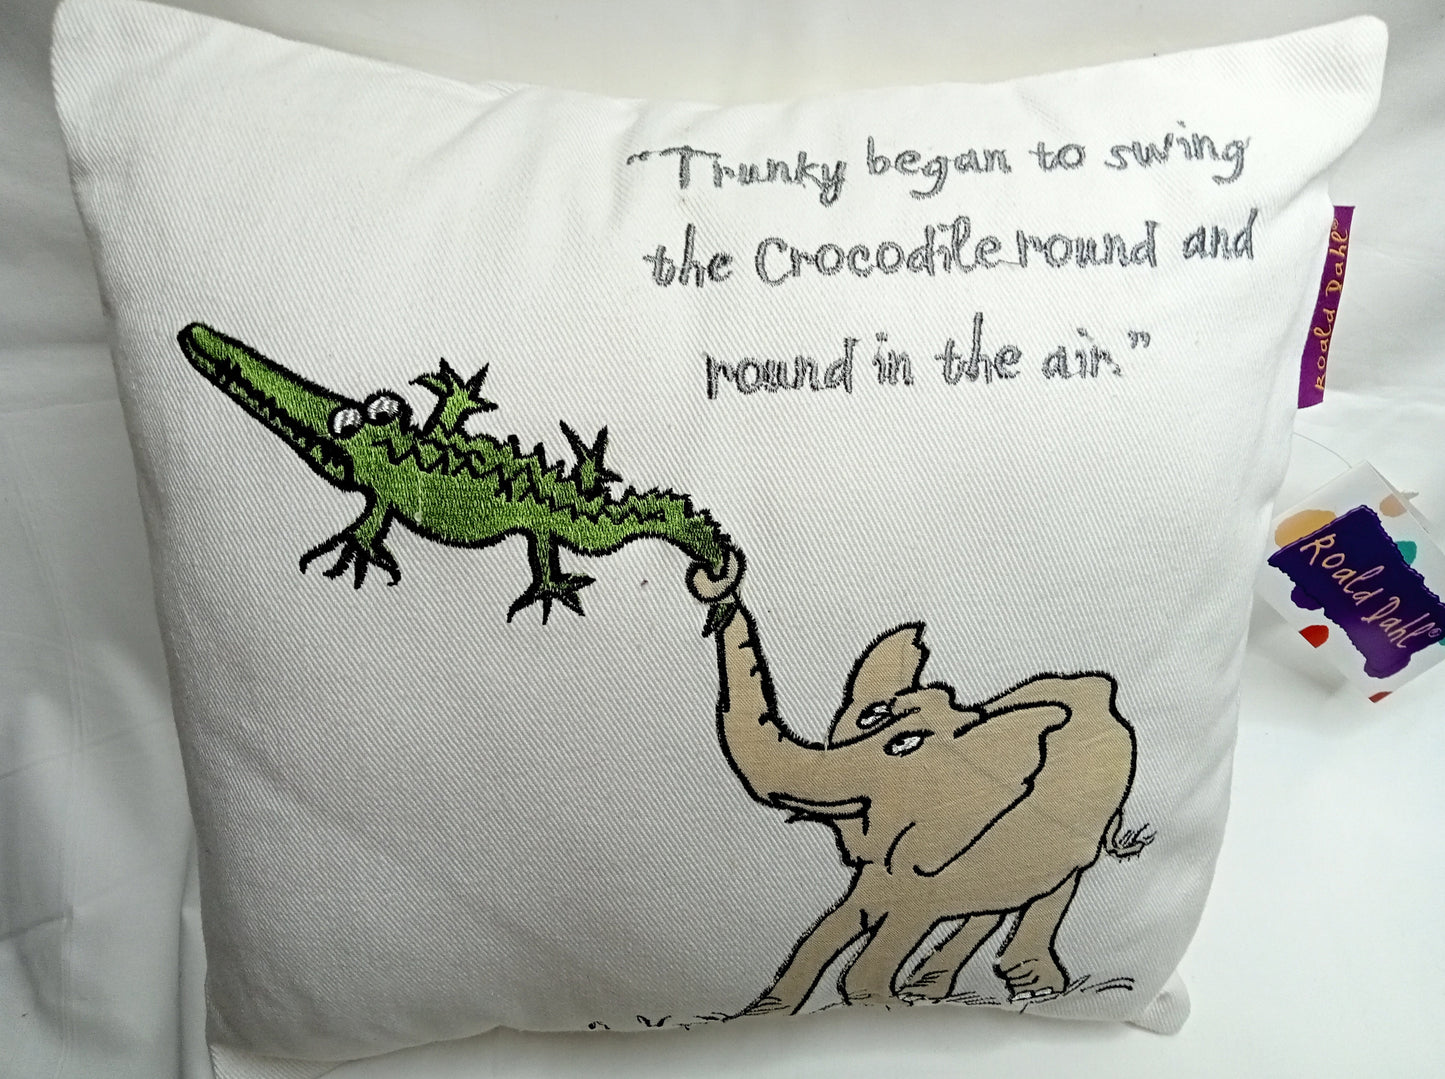 The Enormous Crocodile Cushions by Roald Dahl